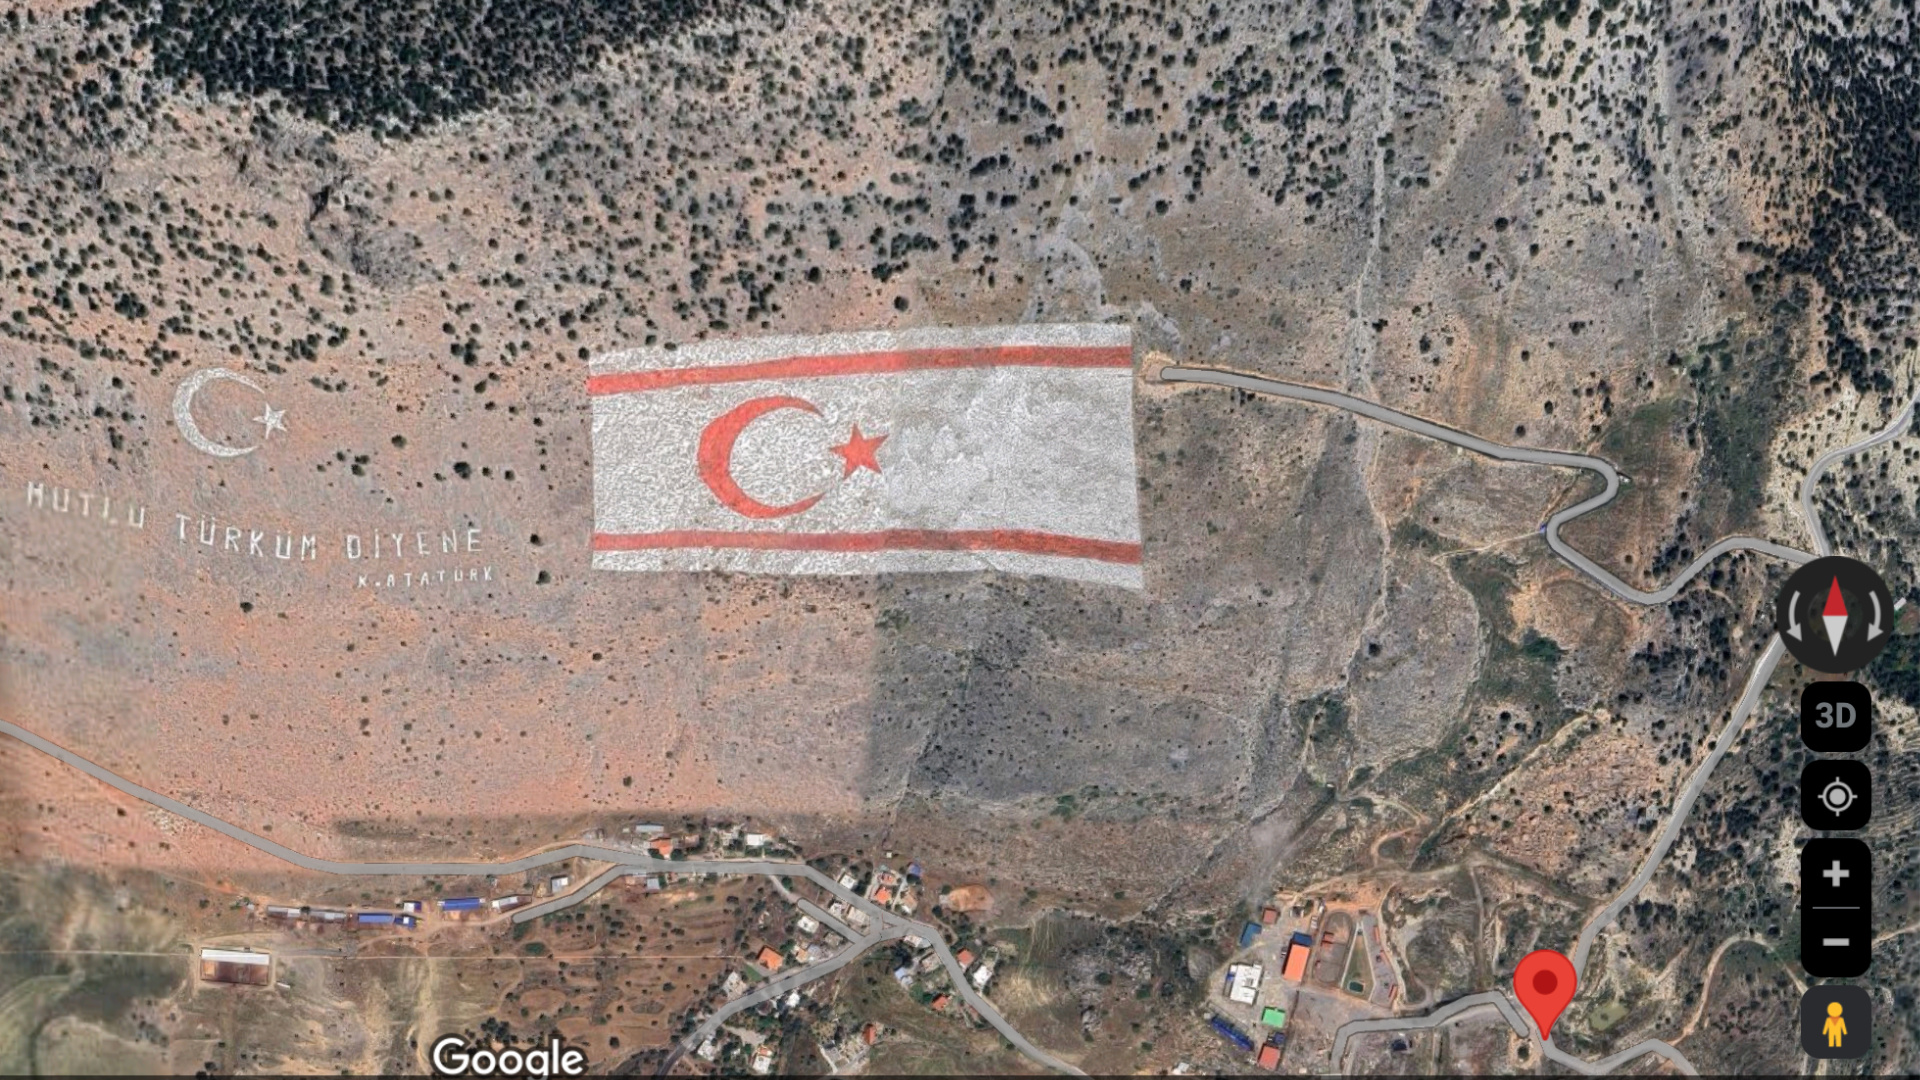 Le drapeau de Chypre